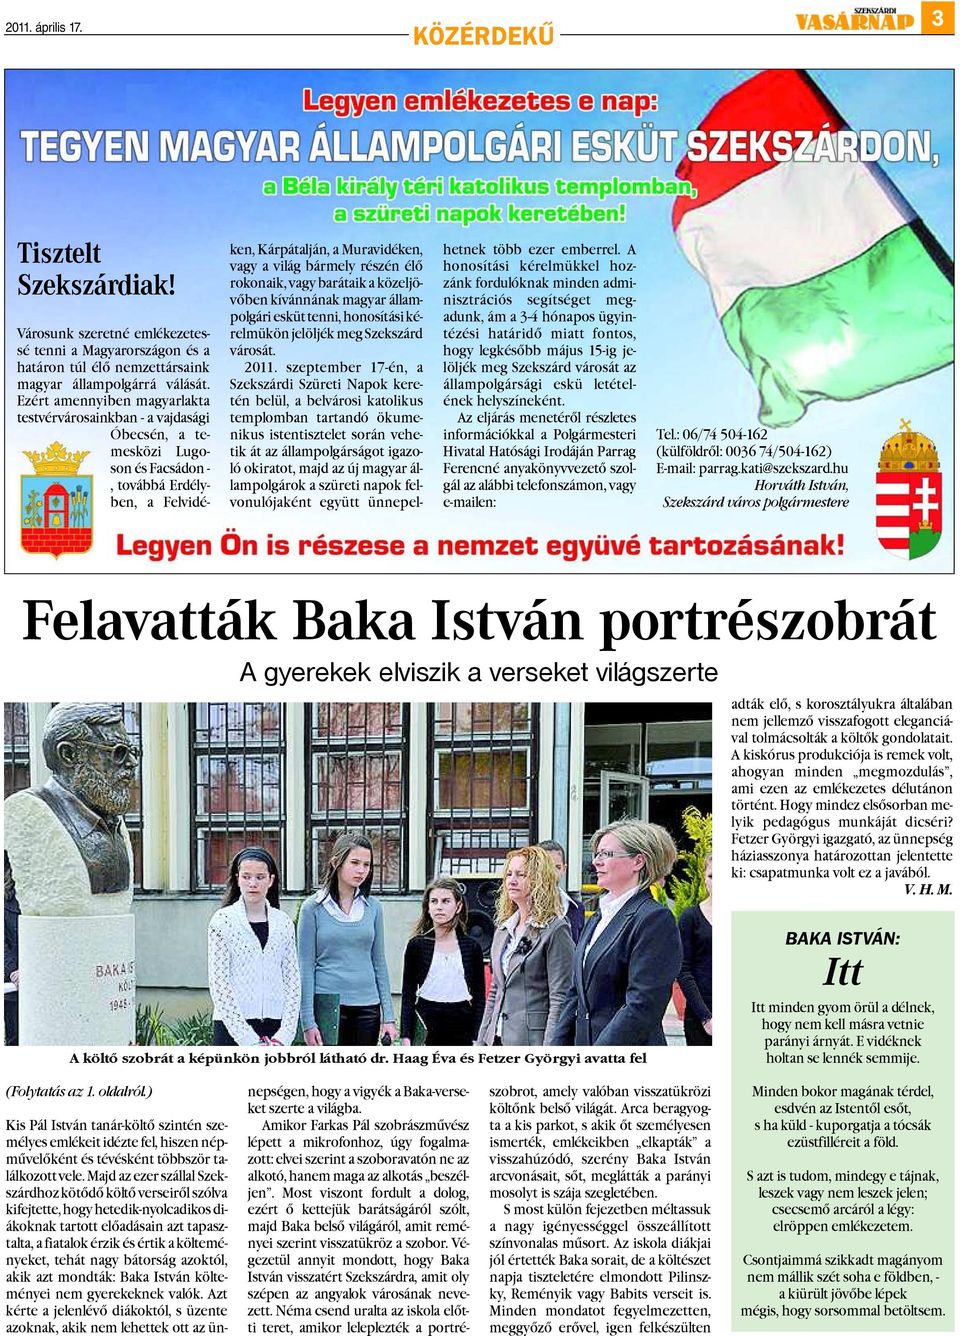 rokonaik, vagy barátaik a közeljövõben kívánnának magyar állampolgári esküt tenni, honosítási kérelmükön jelöljék meg Szekszárd városát. 2011.